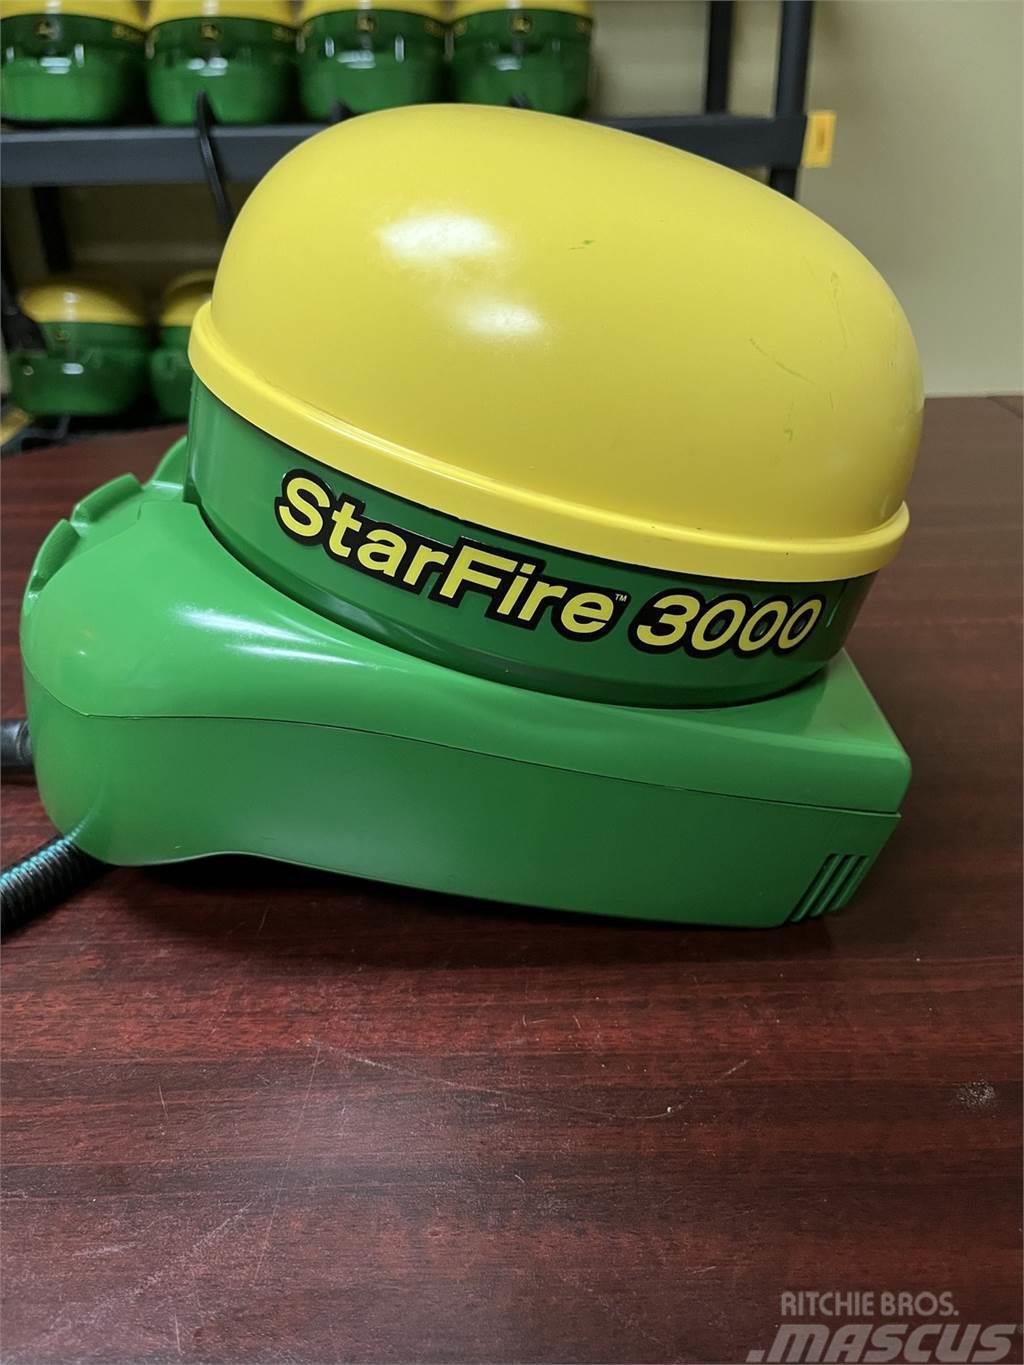 John Deere Starfire 3000 Precisiezaaimachines